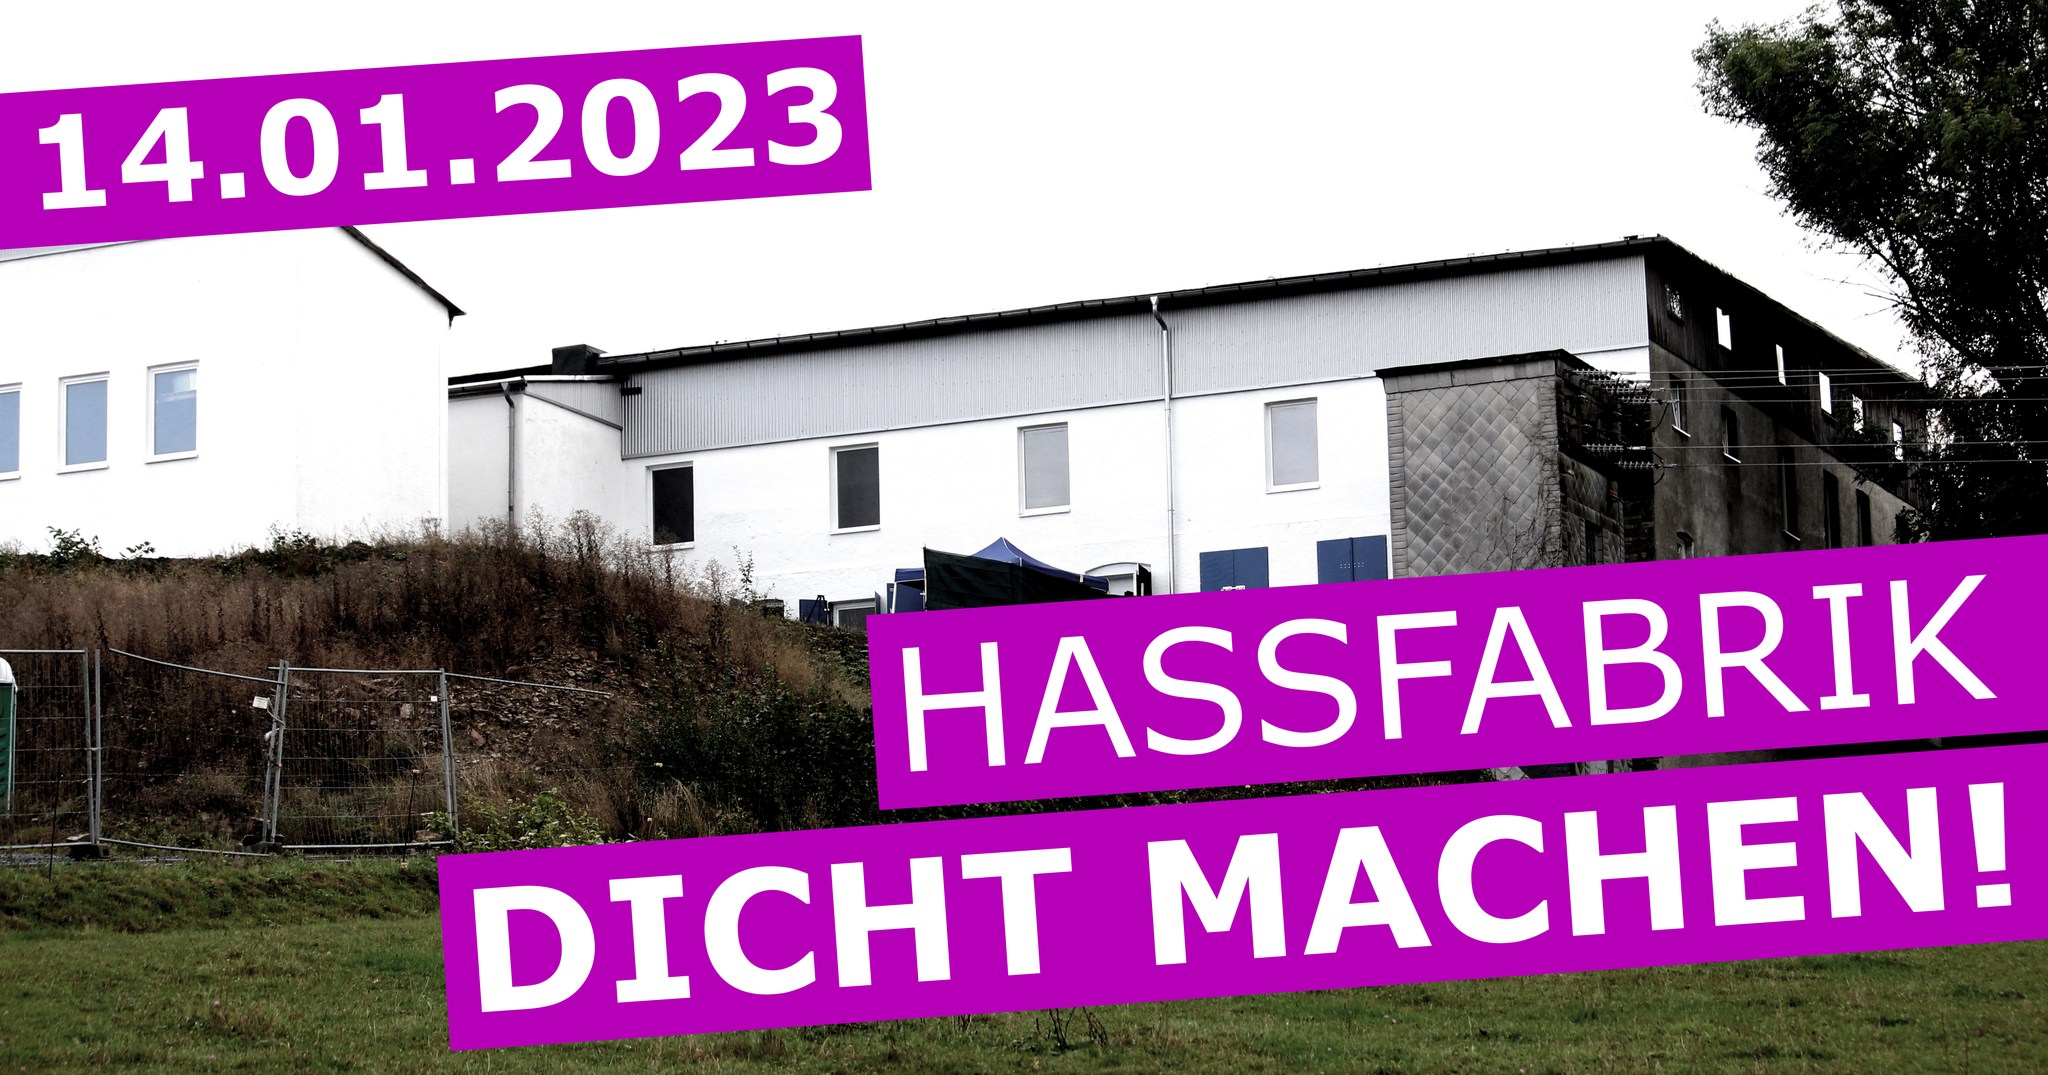 14.01.2023 - Hassfabrik DICHT MACHEN!